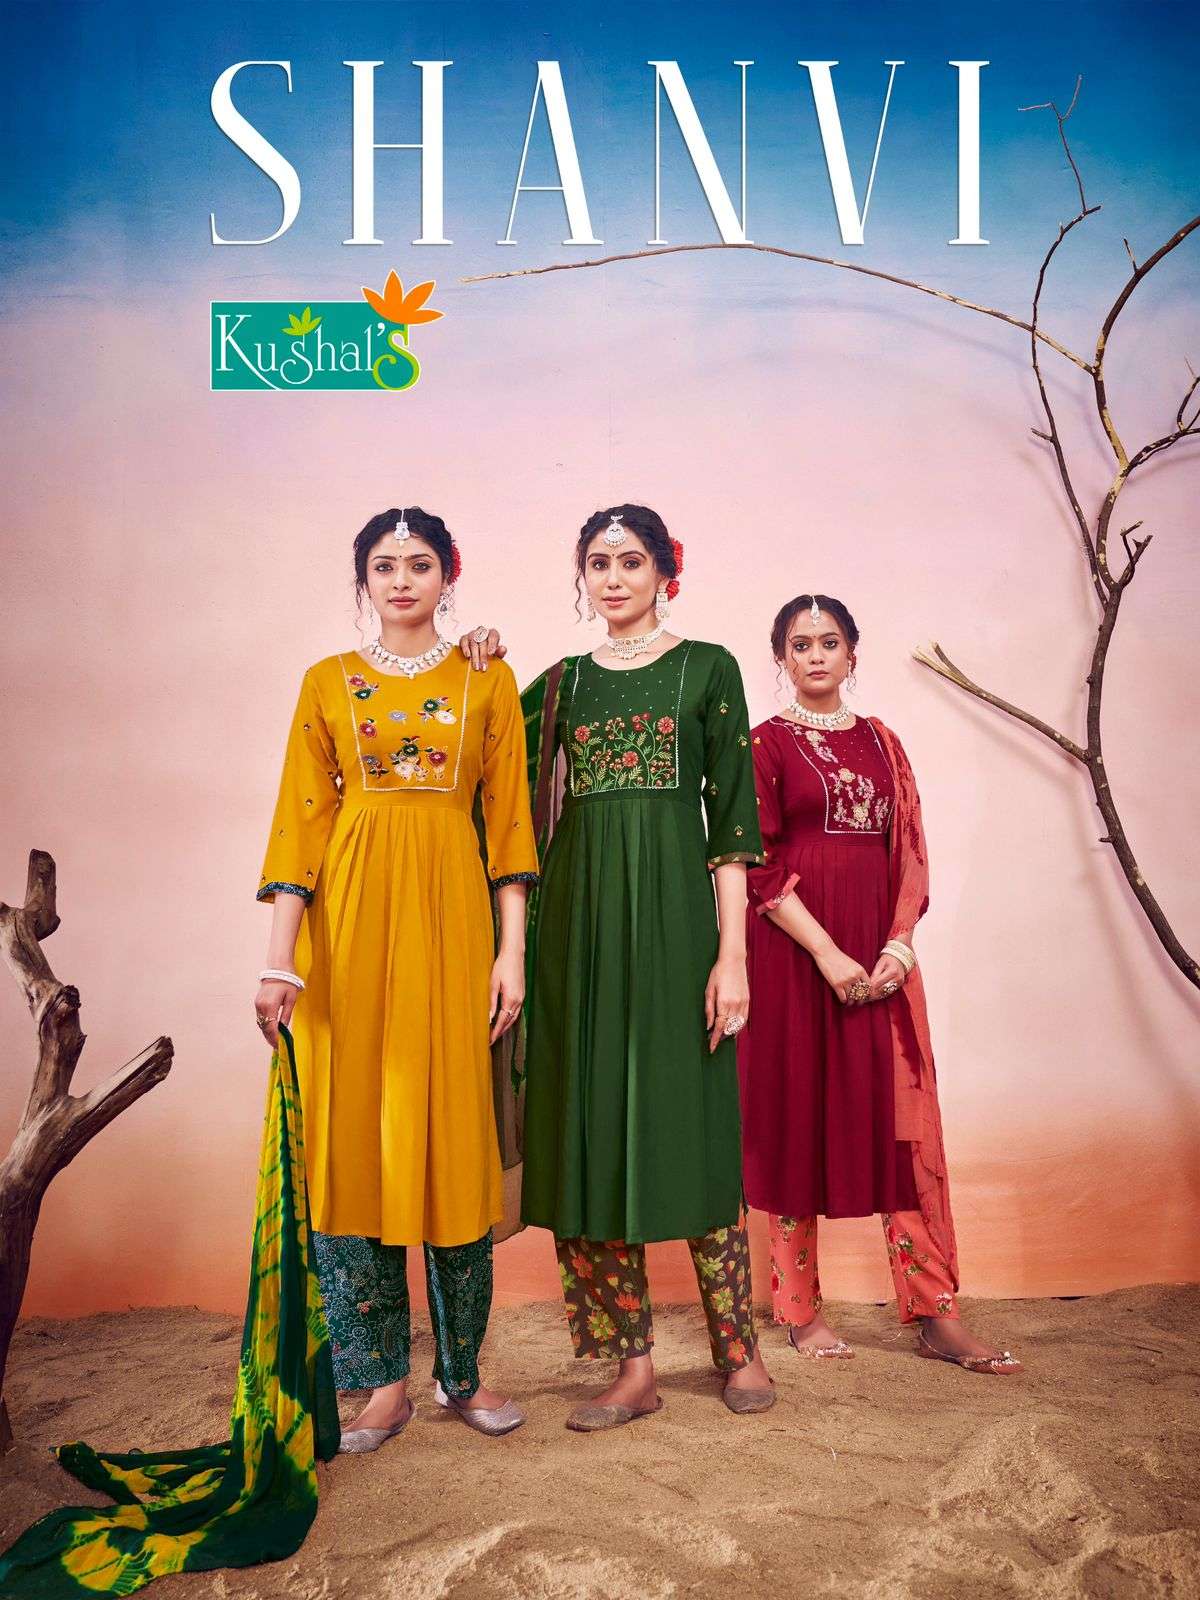 Kushals Shanvi Fancy Kurti Pant Dupatta Pair Catalog New Designs